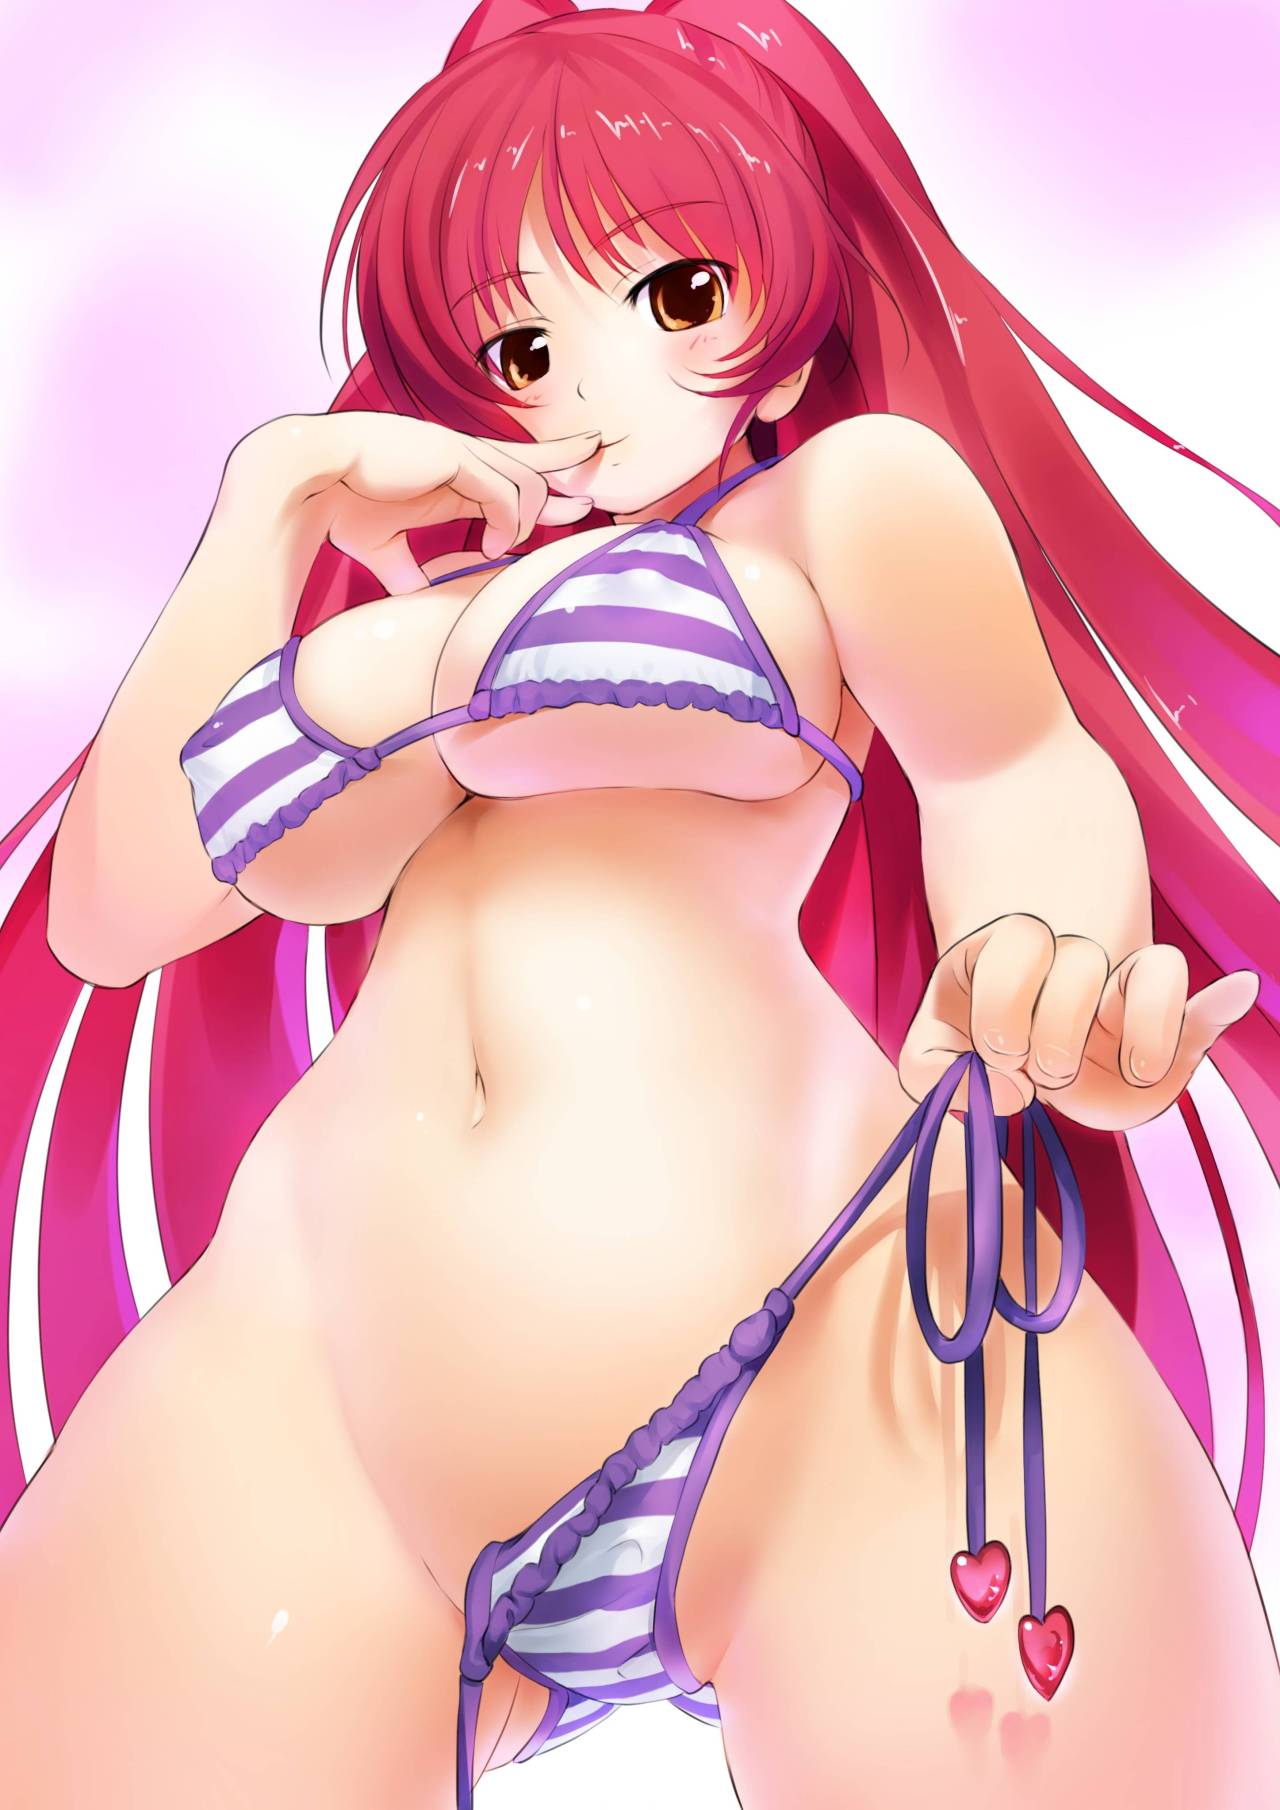 Anime girl with bikini